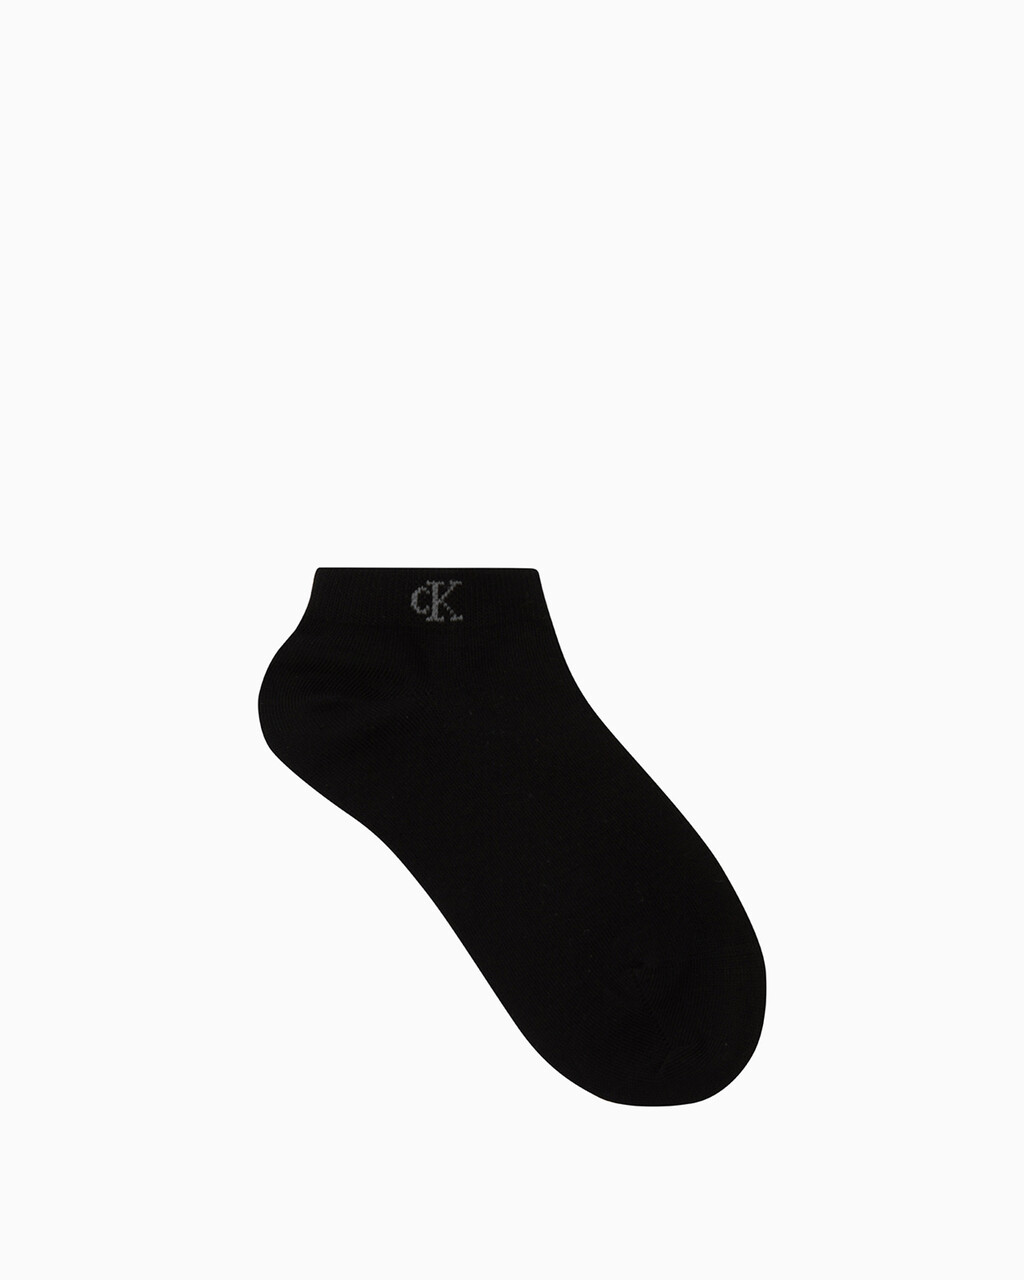 2 雙棉質低筒襪, COLOR 001, hi-res